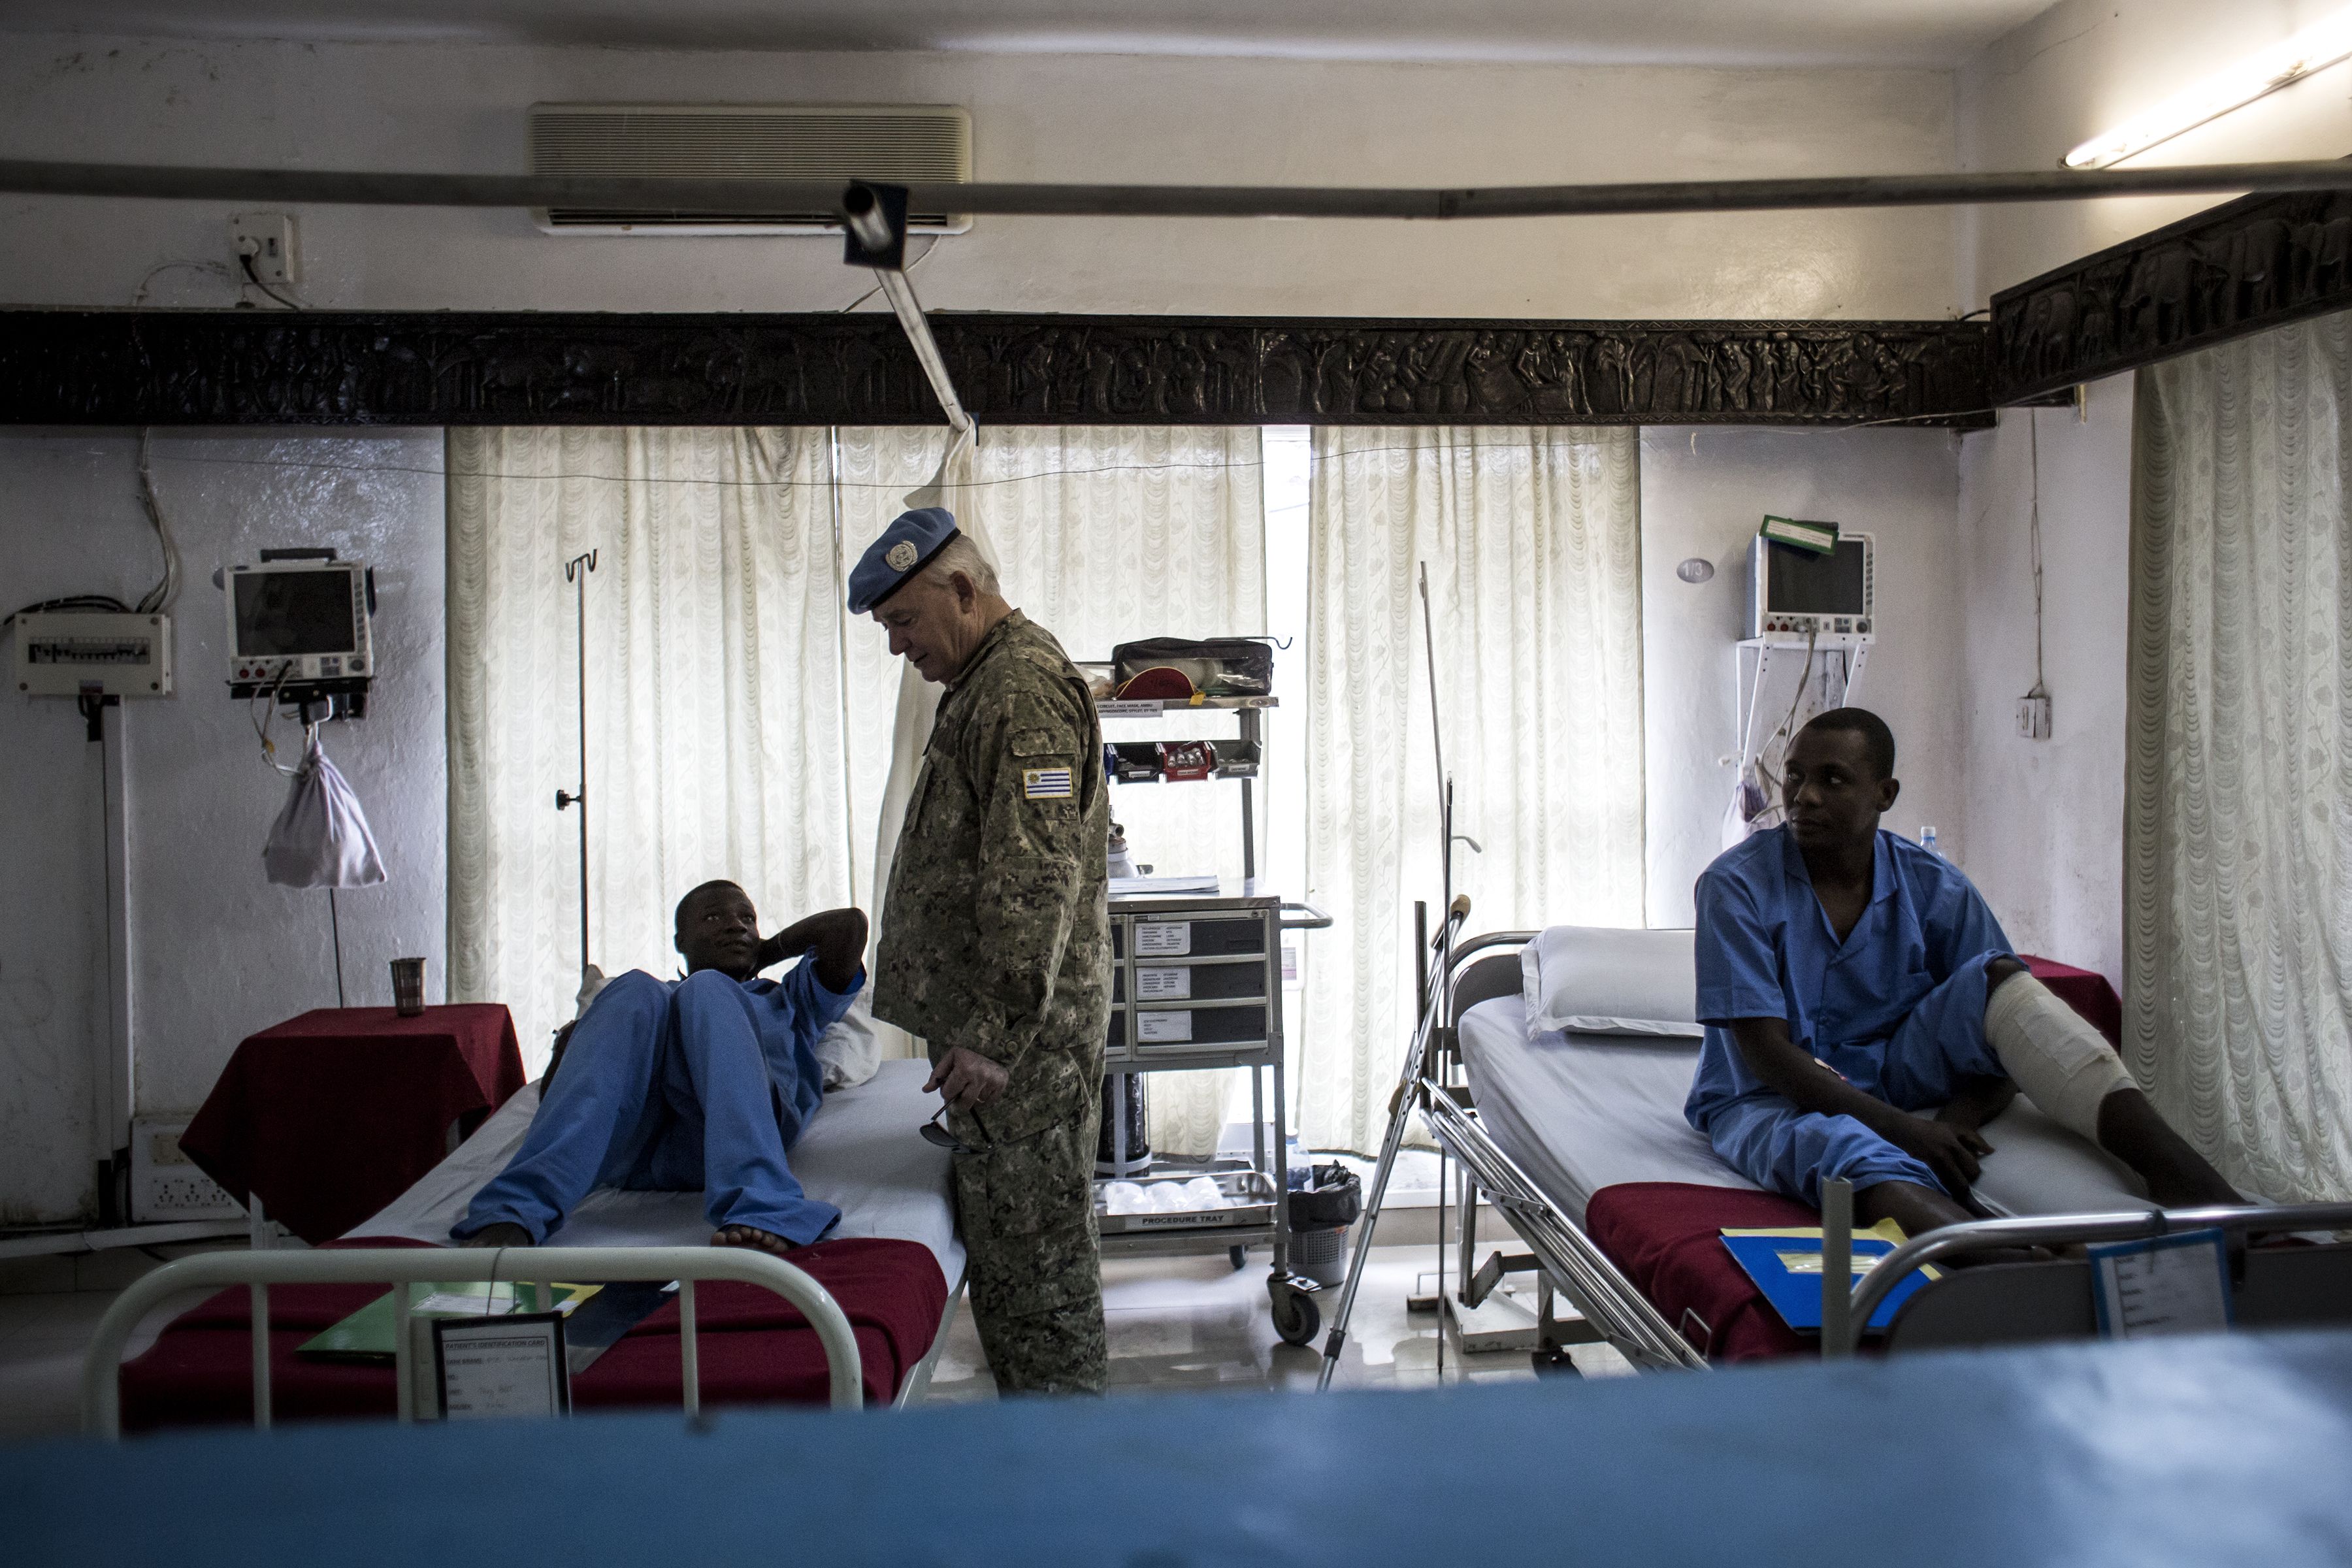 مسئول بالأمم المتحدة يزور جنود مصابين فى الكونغو